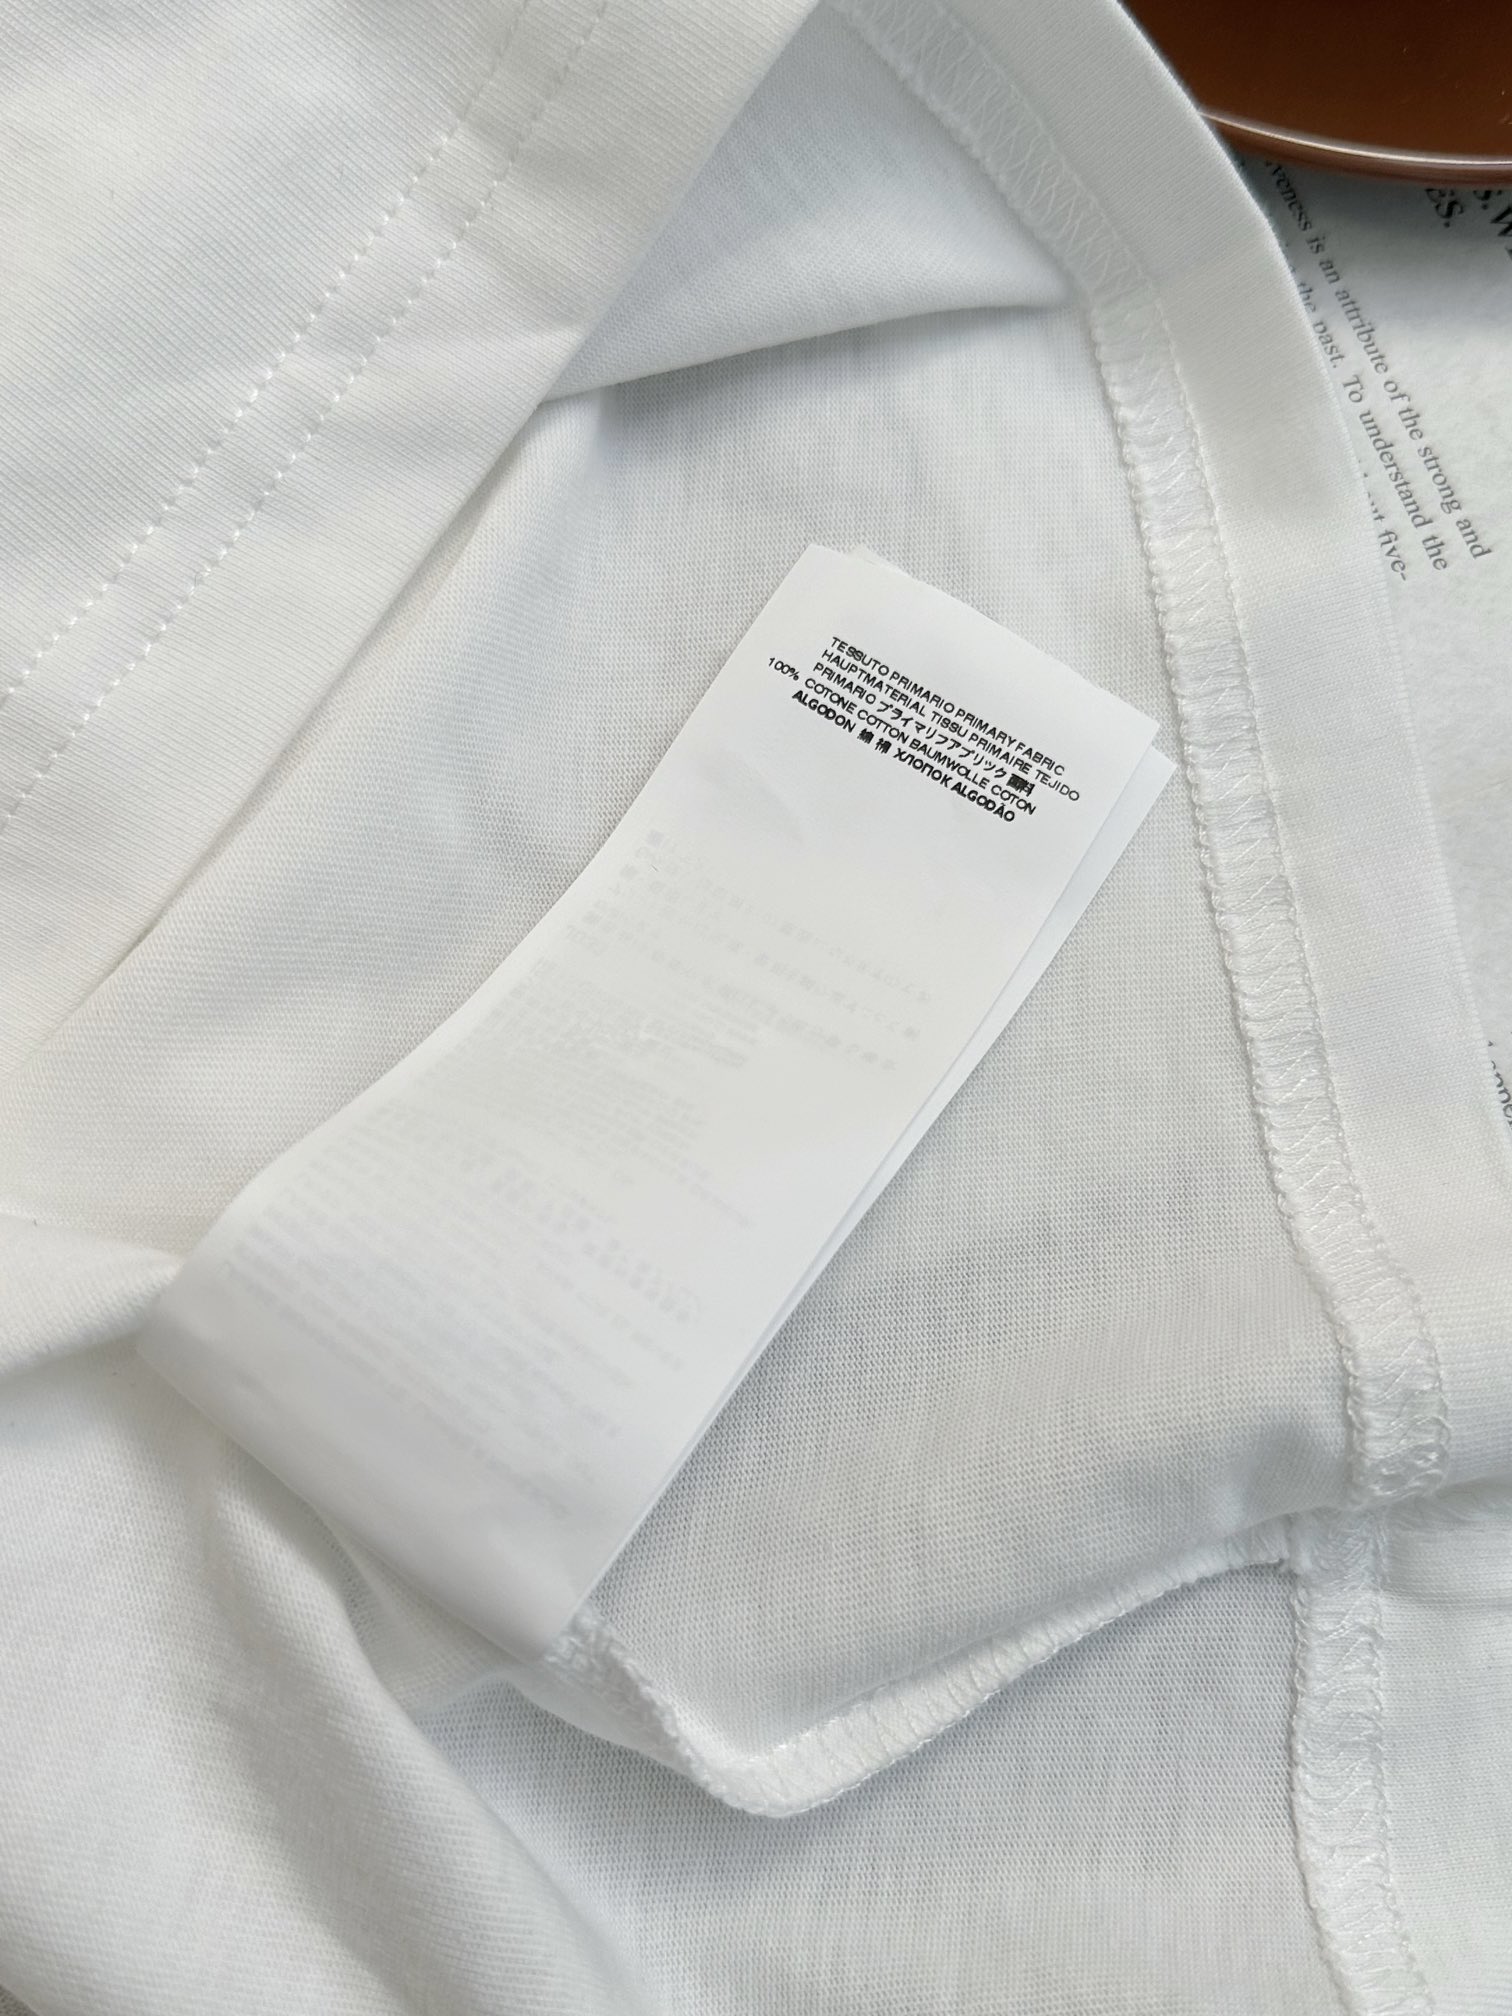 /新品发布相框印花T恤短袖选用定制100%棉面料纹理非常细腻布面紧实挺括感强面料舒适透气重影人像油画以不